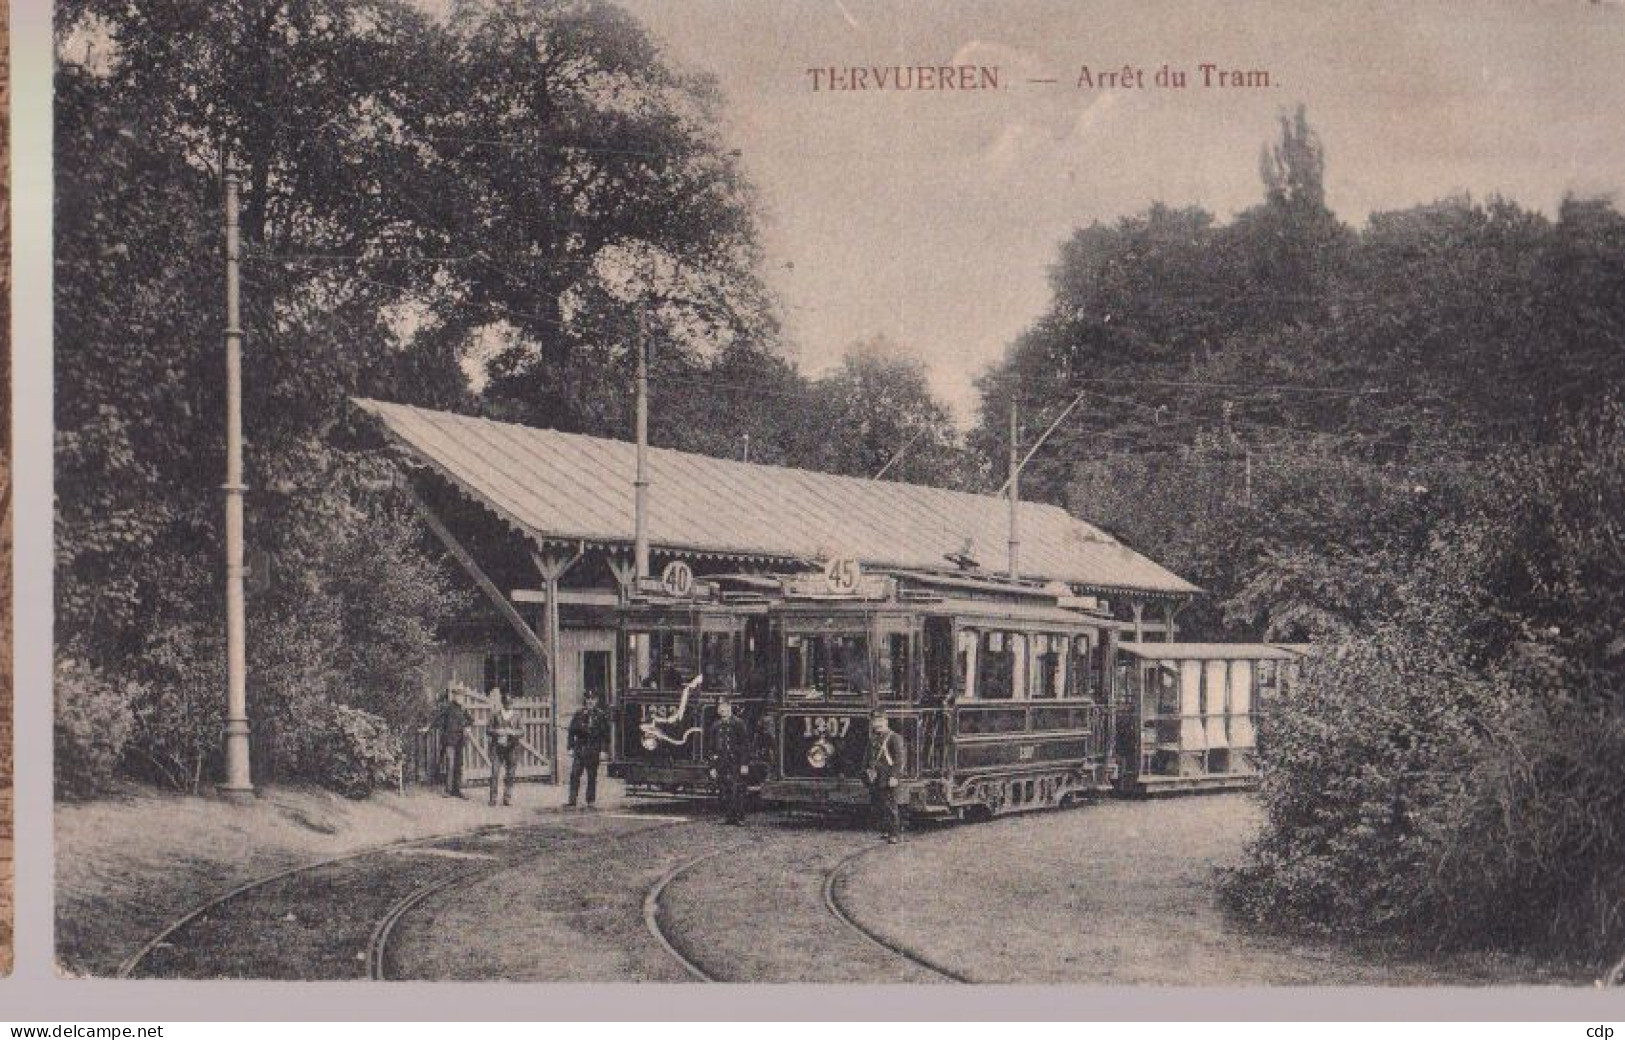 Cpa Tervueren  Trams  1918 - Tervuren